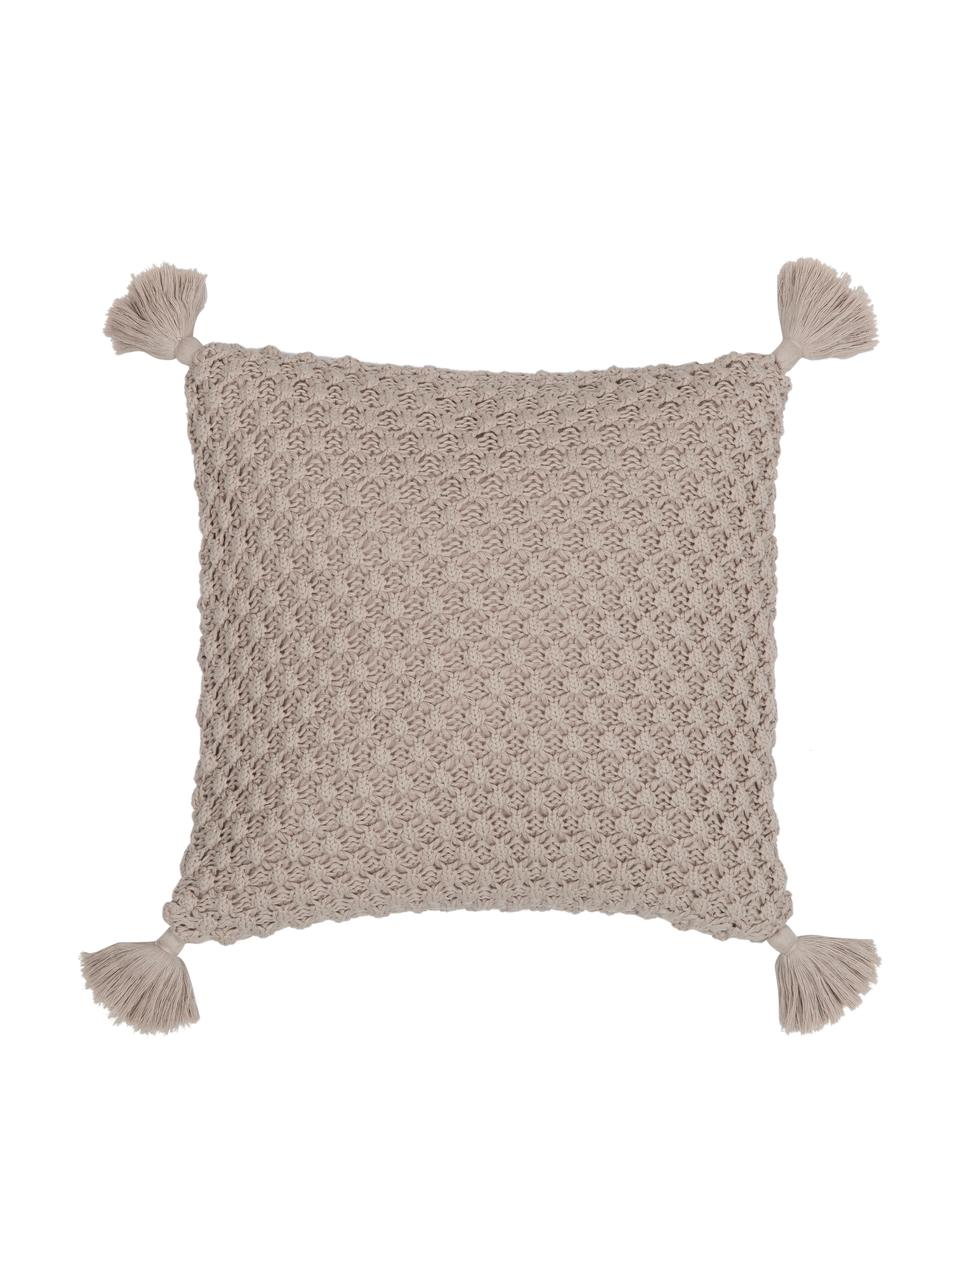 Strick-Kissenhülle Miri in Beige mit Quasten, 100% gekämmte Baumwolle, Beige, 50 x 50 cm